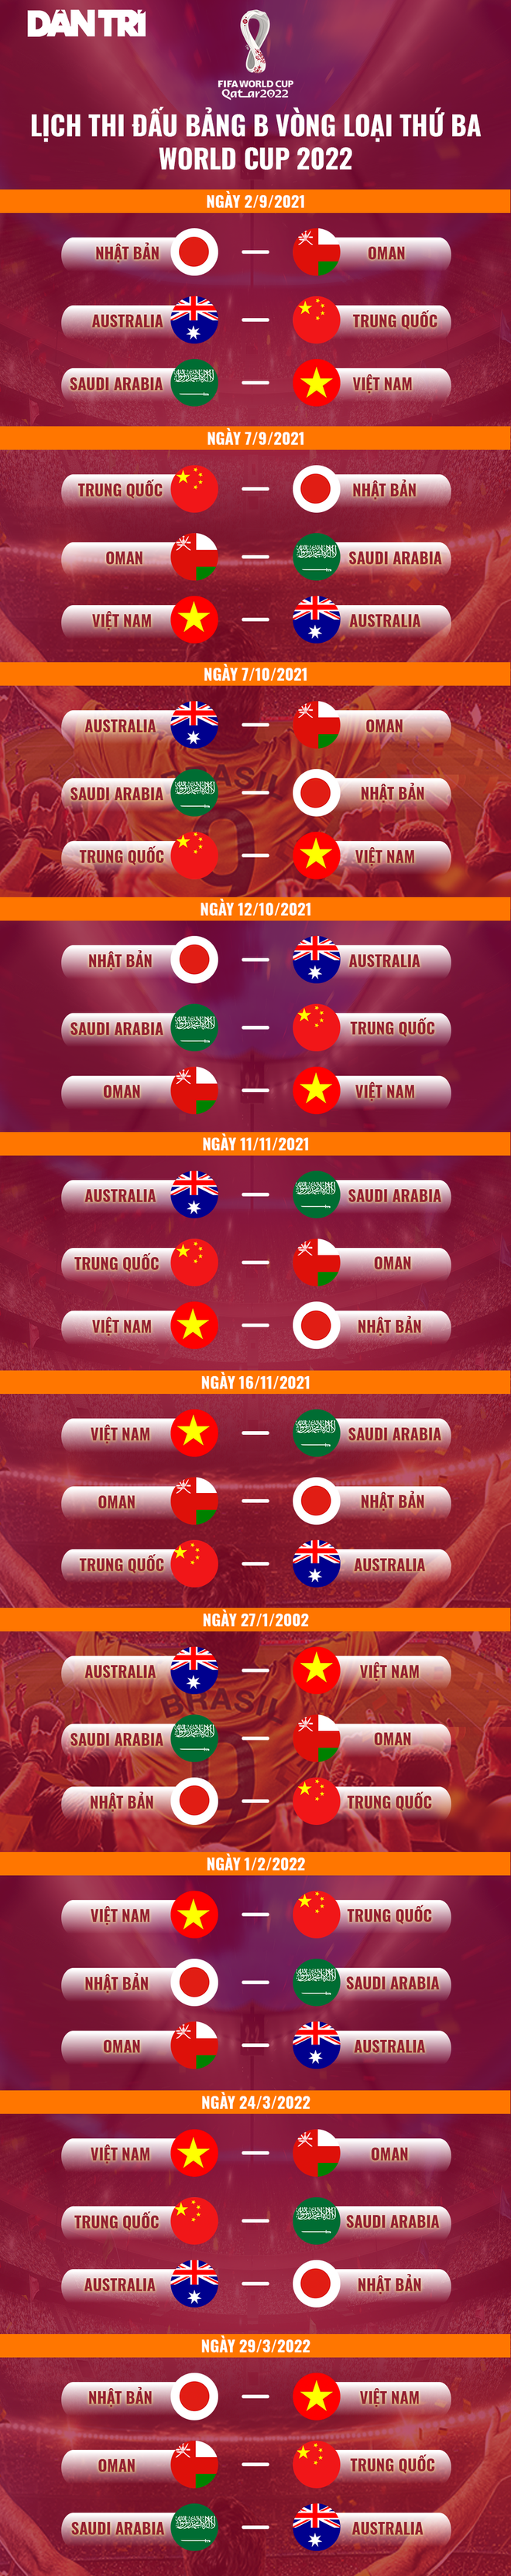 Báo Trung Quốc soi trận đội tuyển Việt Nam đá giao hữu với đàn em U22 - 2